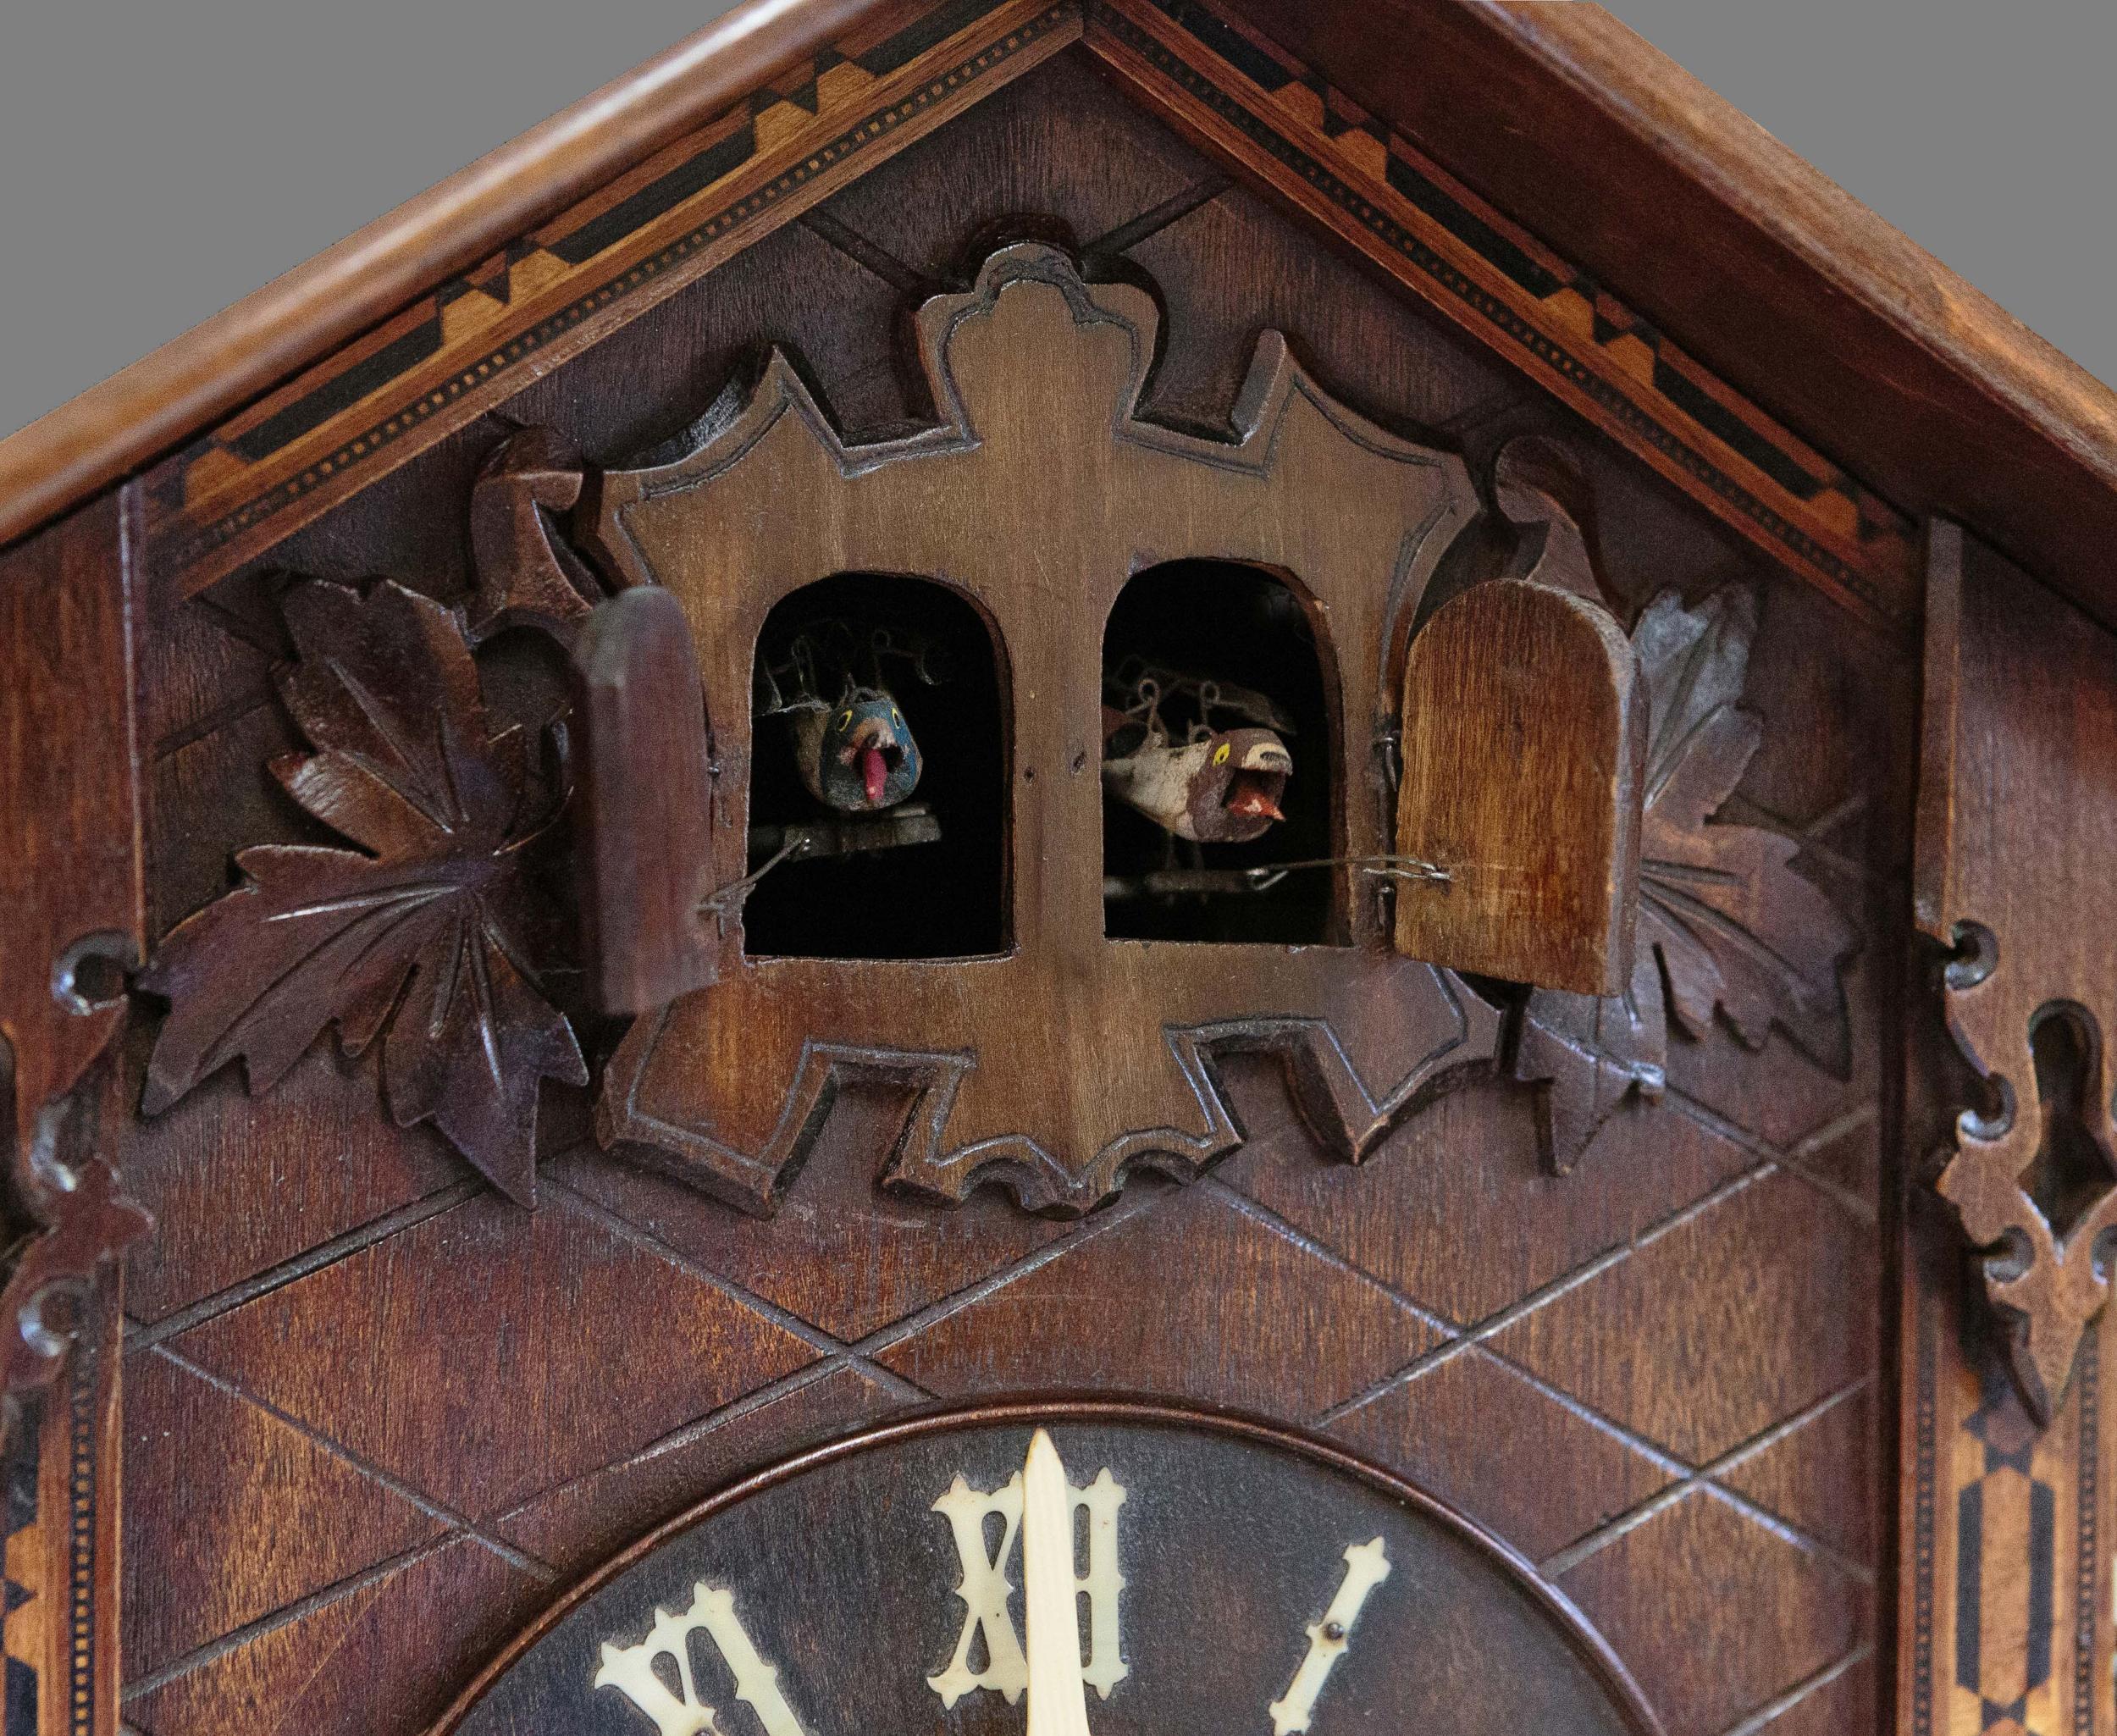 cuckoo quail clock